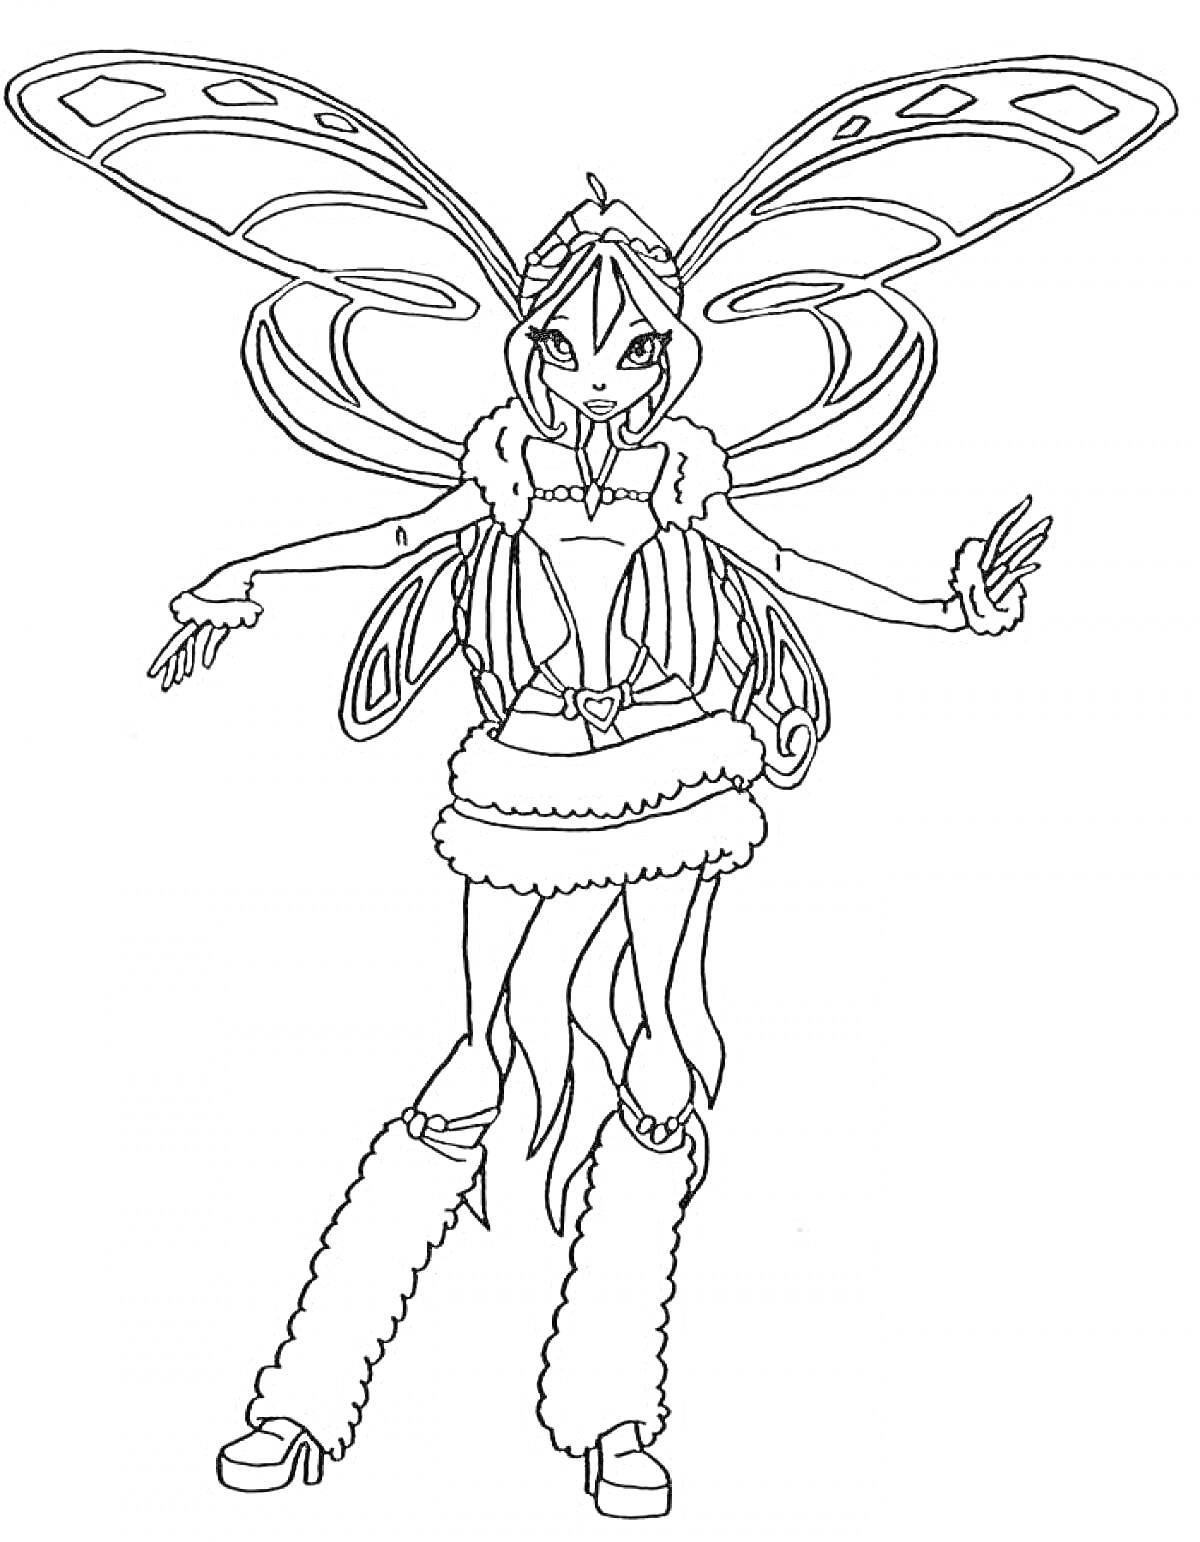 Винкс Беливикс: Волшебная фея в наряде с меховой отделкой, раскинувшая руки в стороны, с большими крыльями, обутая в туфли и высокие меховые гамаши.